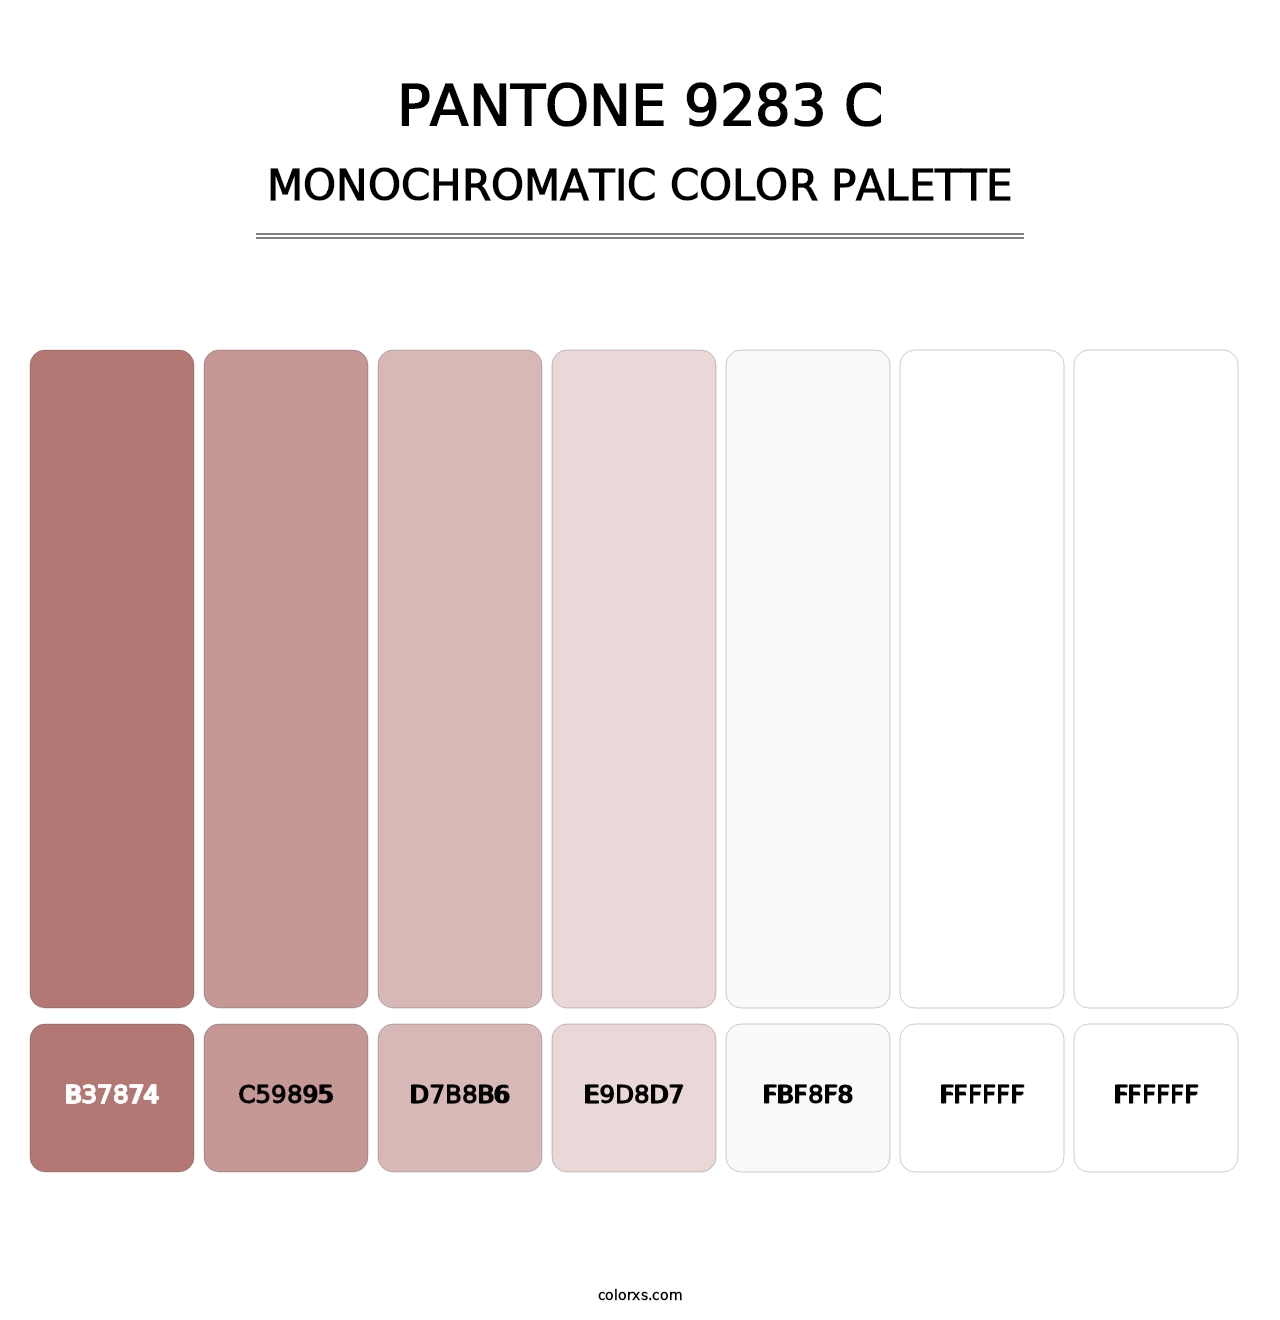 PANTONE 9283 C - Monochromatic Color Palette